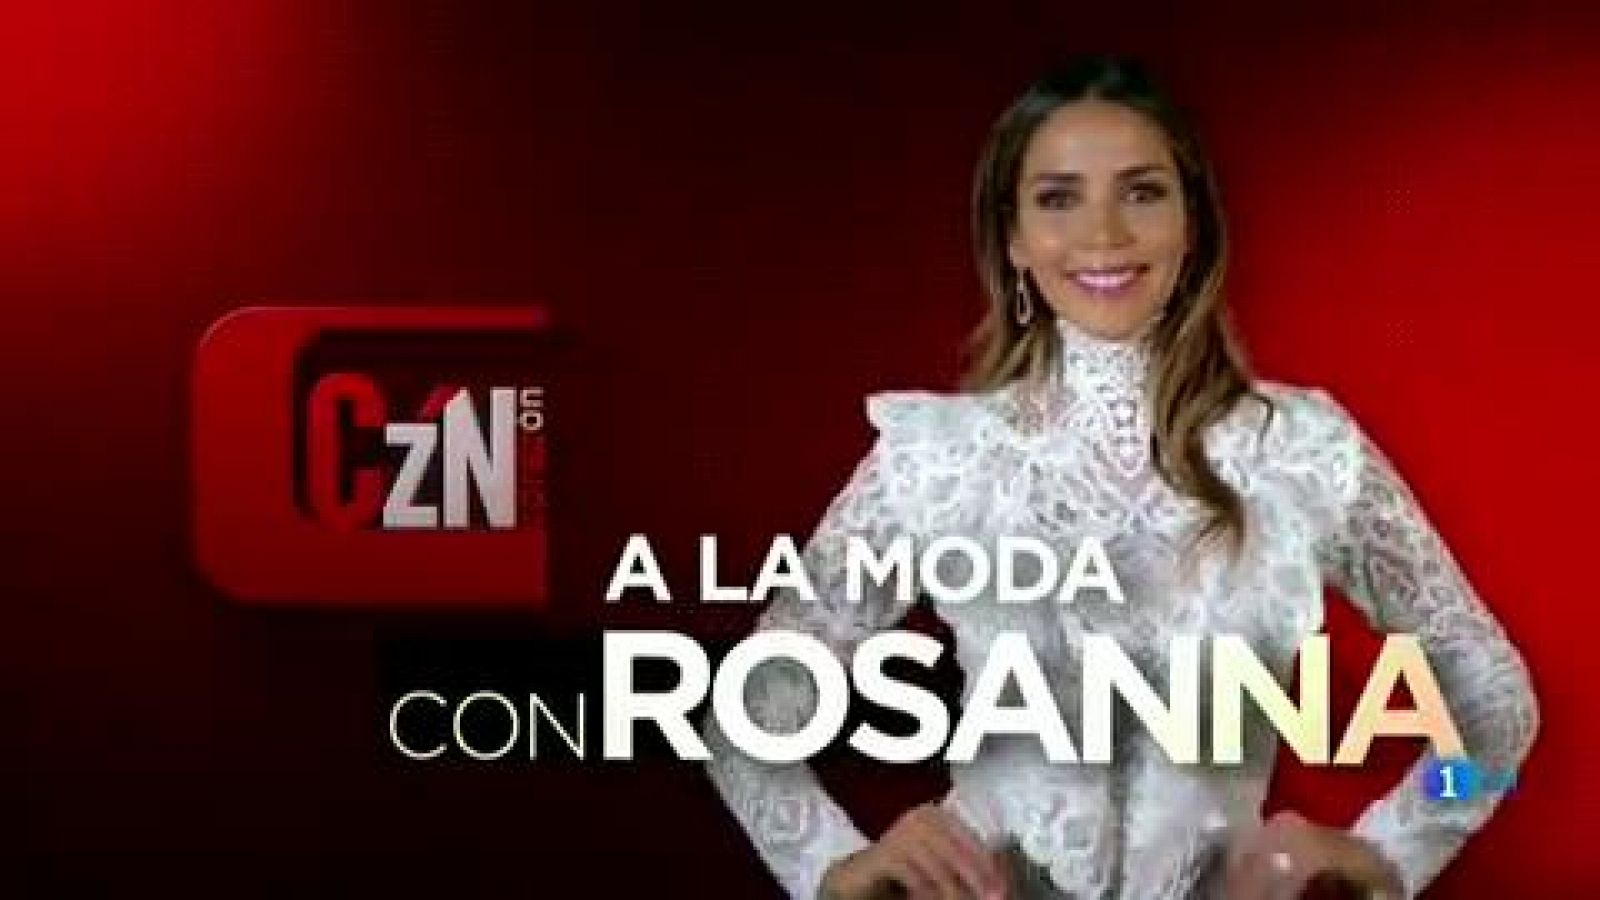 Corazón - Rosanna Zanetti, encargada de la moda en 'Corazón'